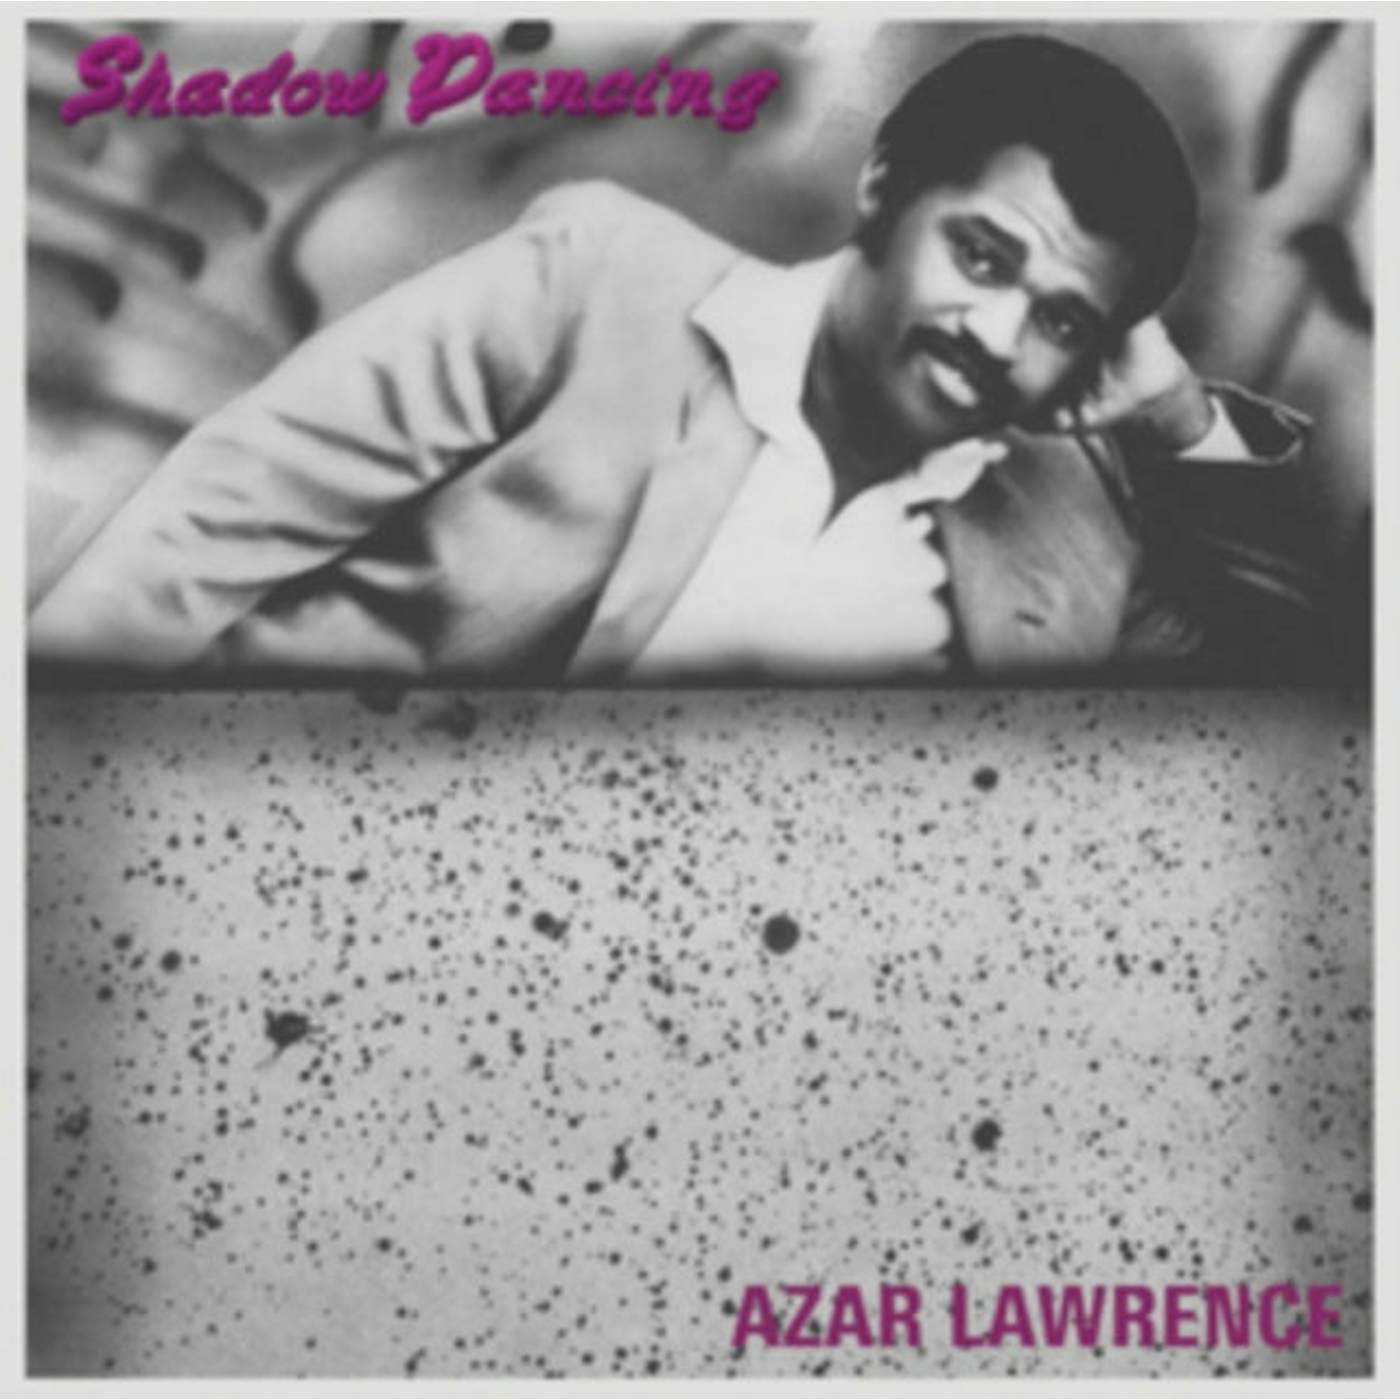 Azar Lawrence LP - Shadow Dancing (Vinyl)